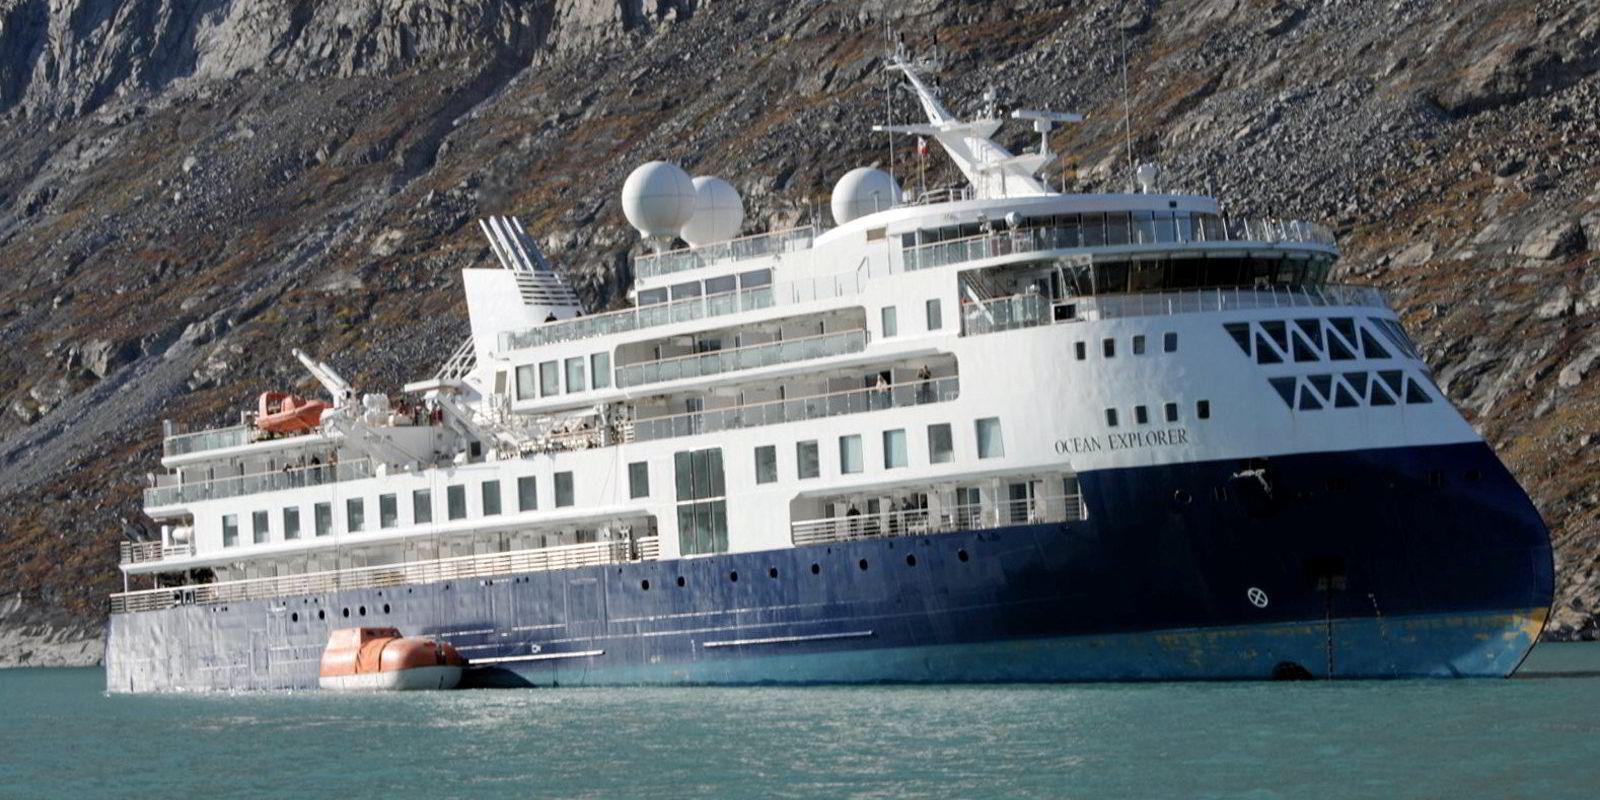 cruise ship ran aground near greenland